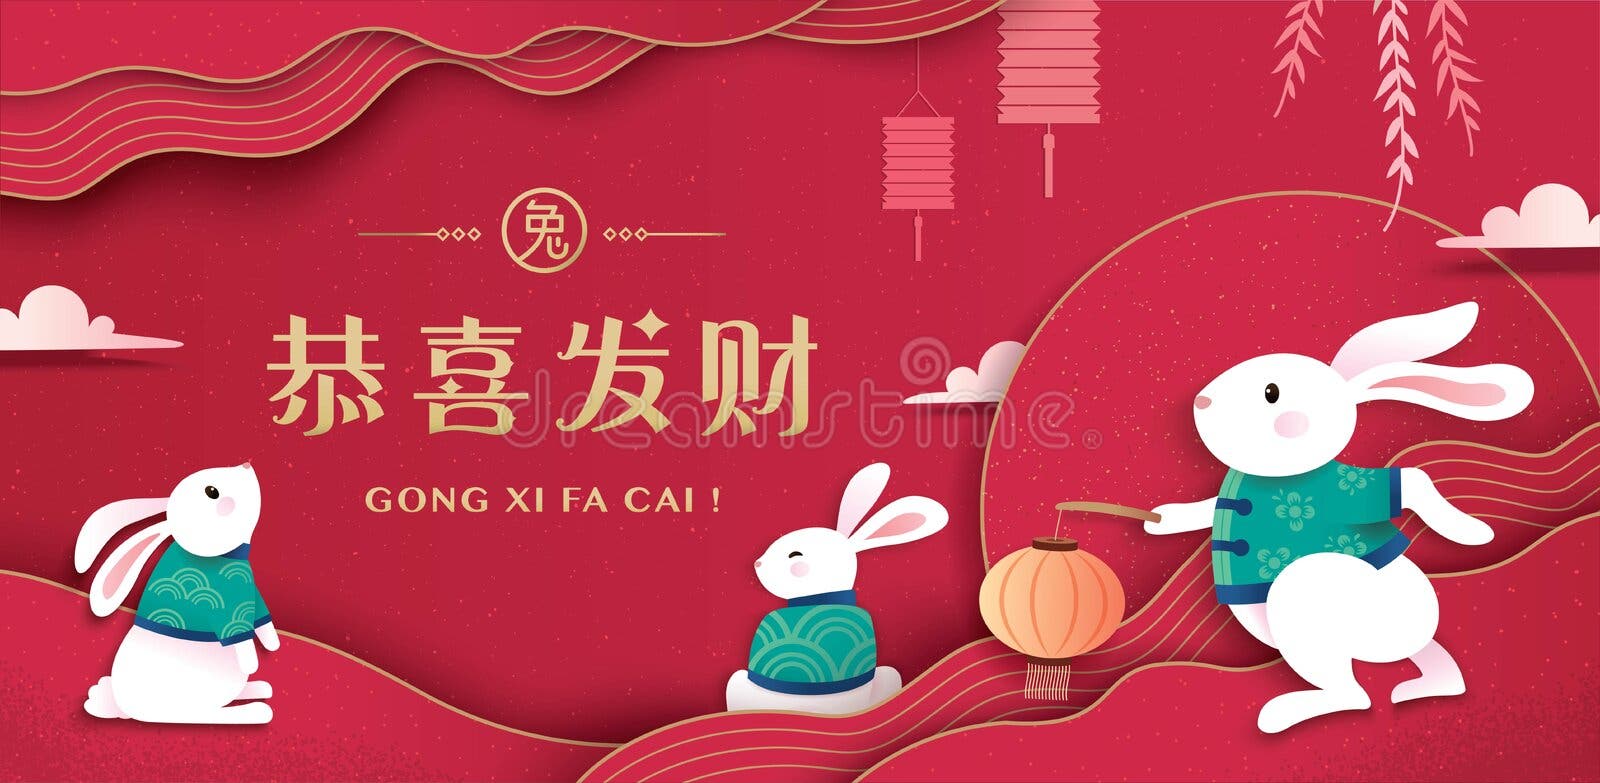 Conejo de año nuevo chino silueta de conejito rojo animal del zodiaco  tradicional rojo con flores blancas tarjeta de horóscopo 2023 o póster  cuadrado calendario lunar asiático vector ilustración oriental